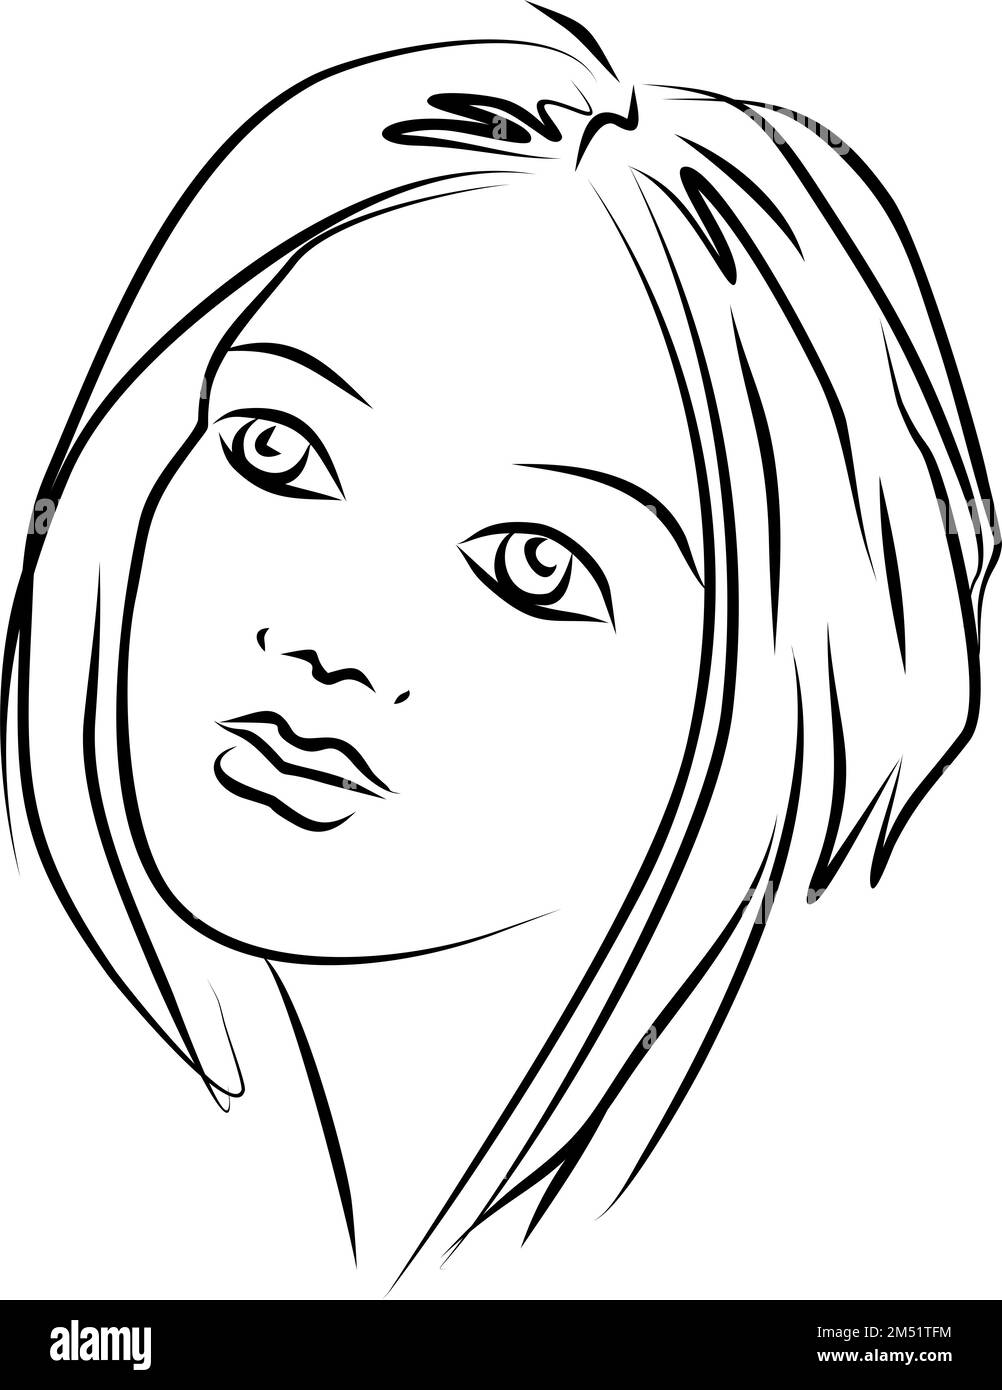 ritratto astratto lineare in bianco e nero di una donna, grafica monocromatica, arte, logo Foto Stock